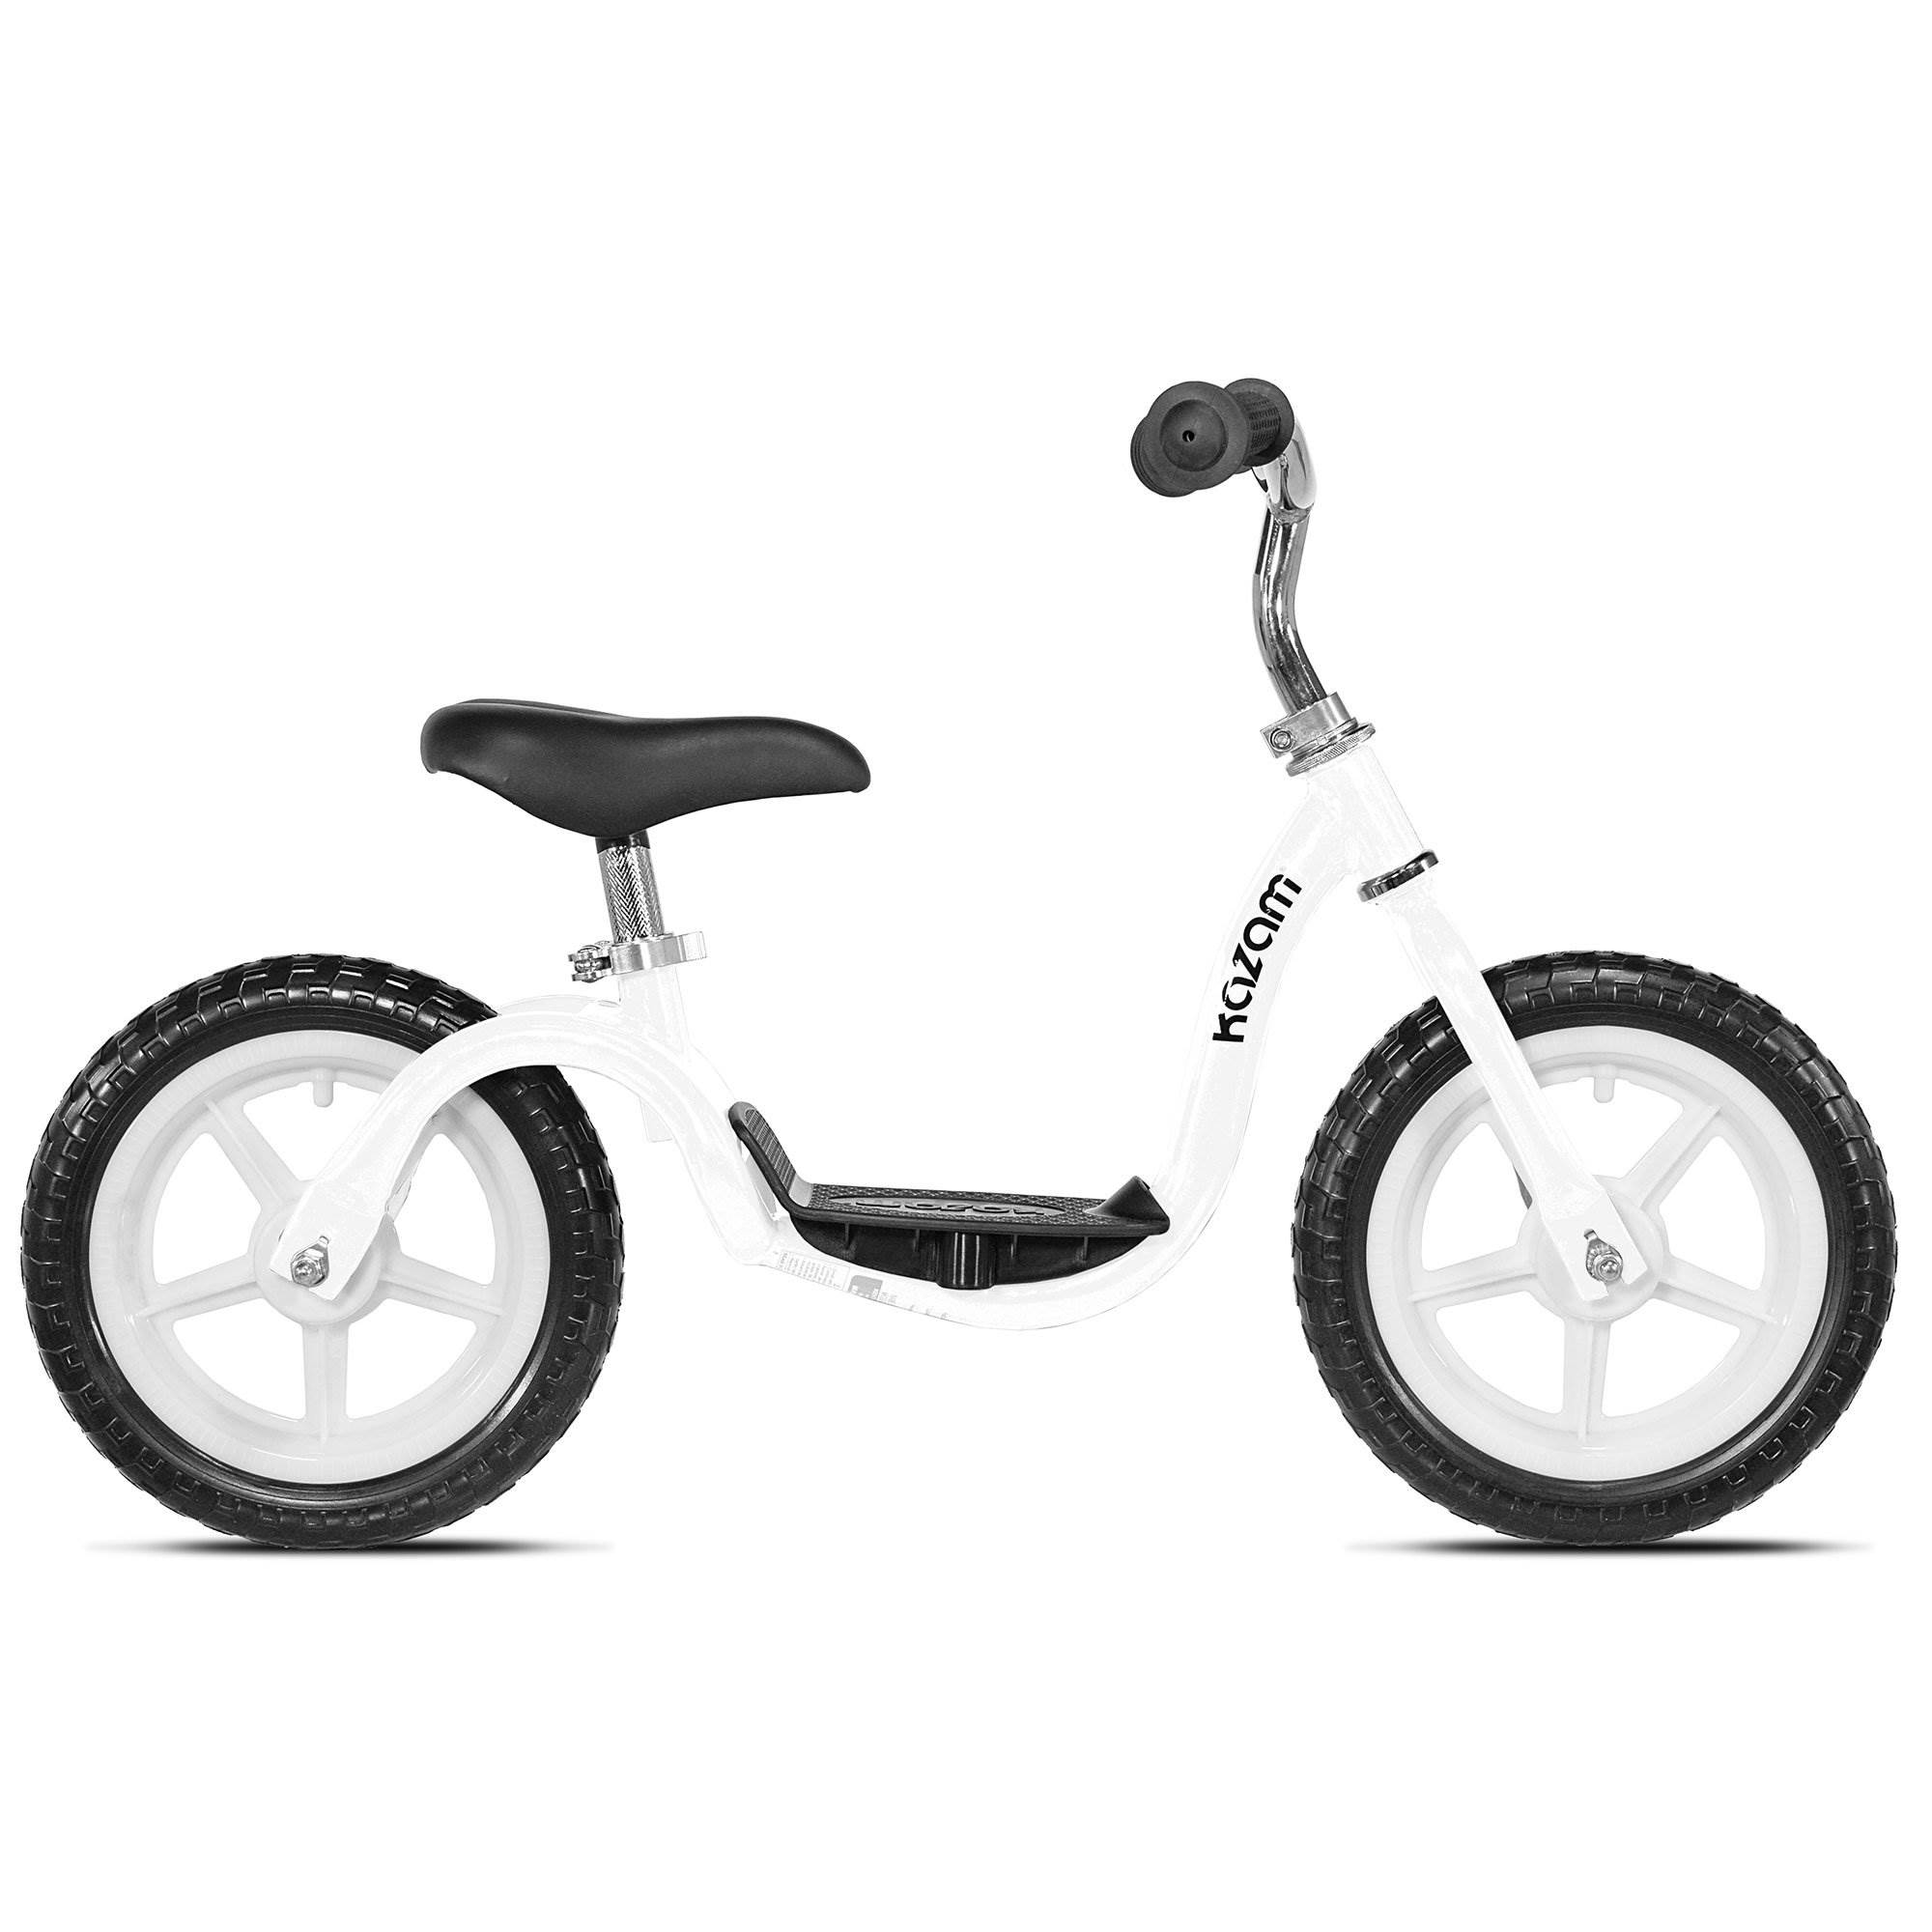 kazam balance bike for adults